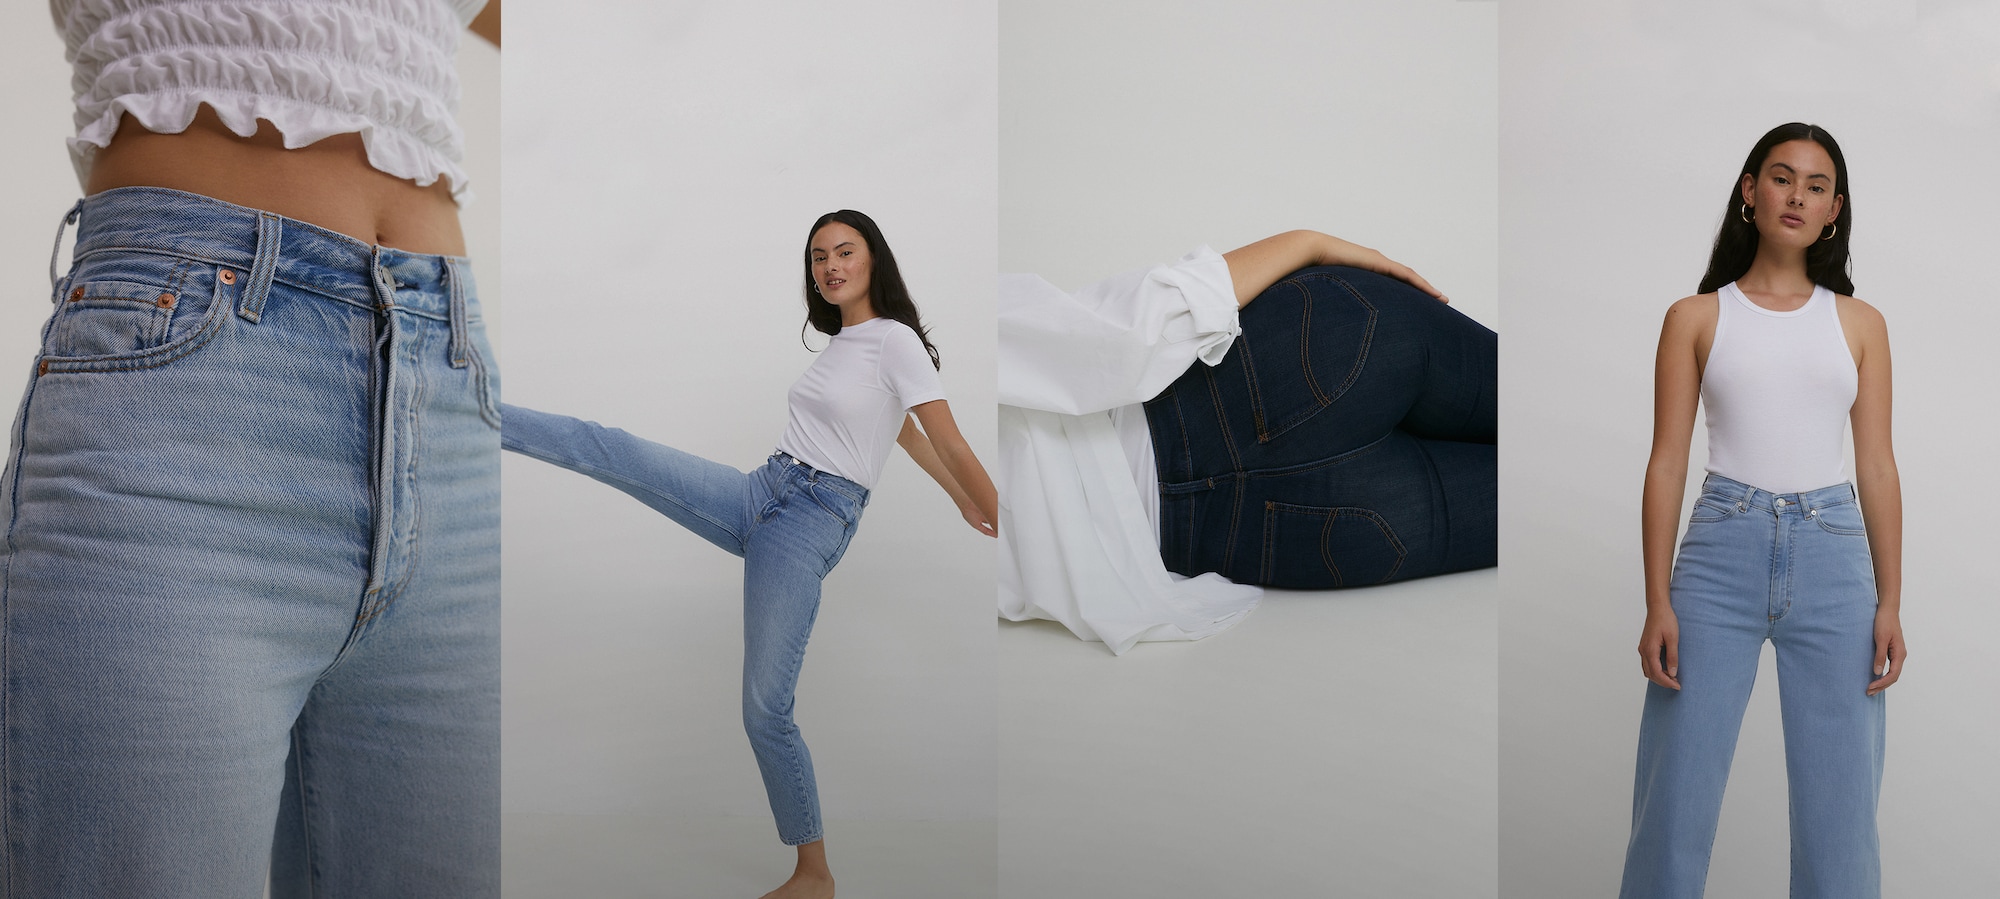 Vind jouw fit Jeans Guide